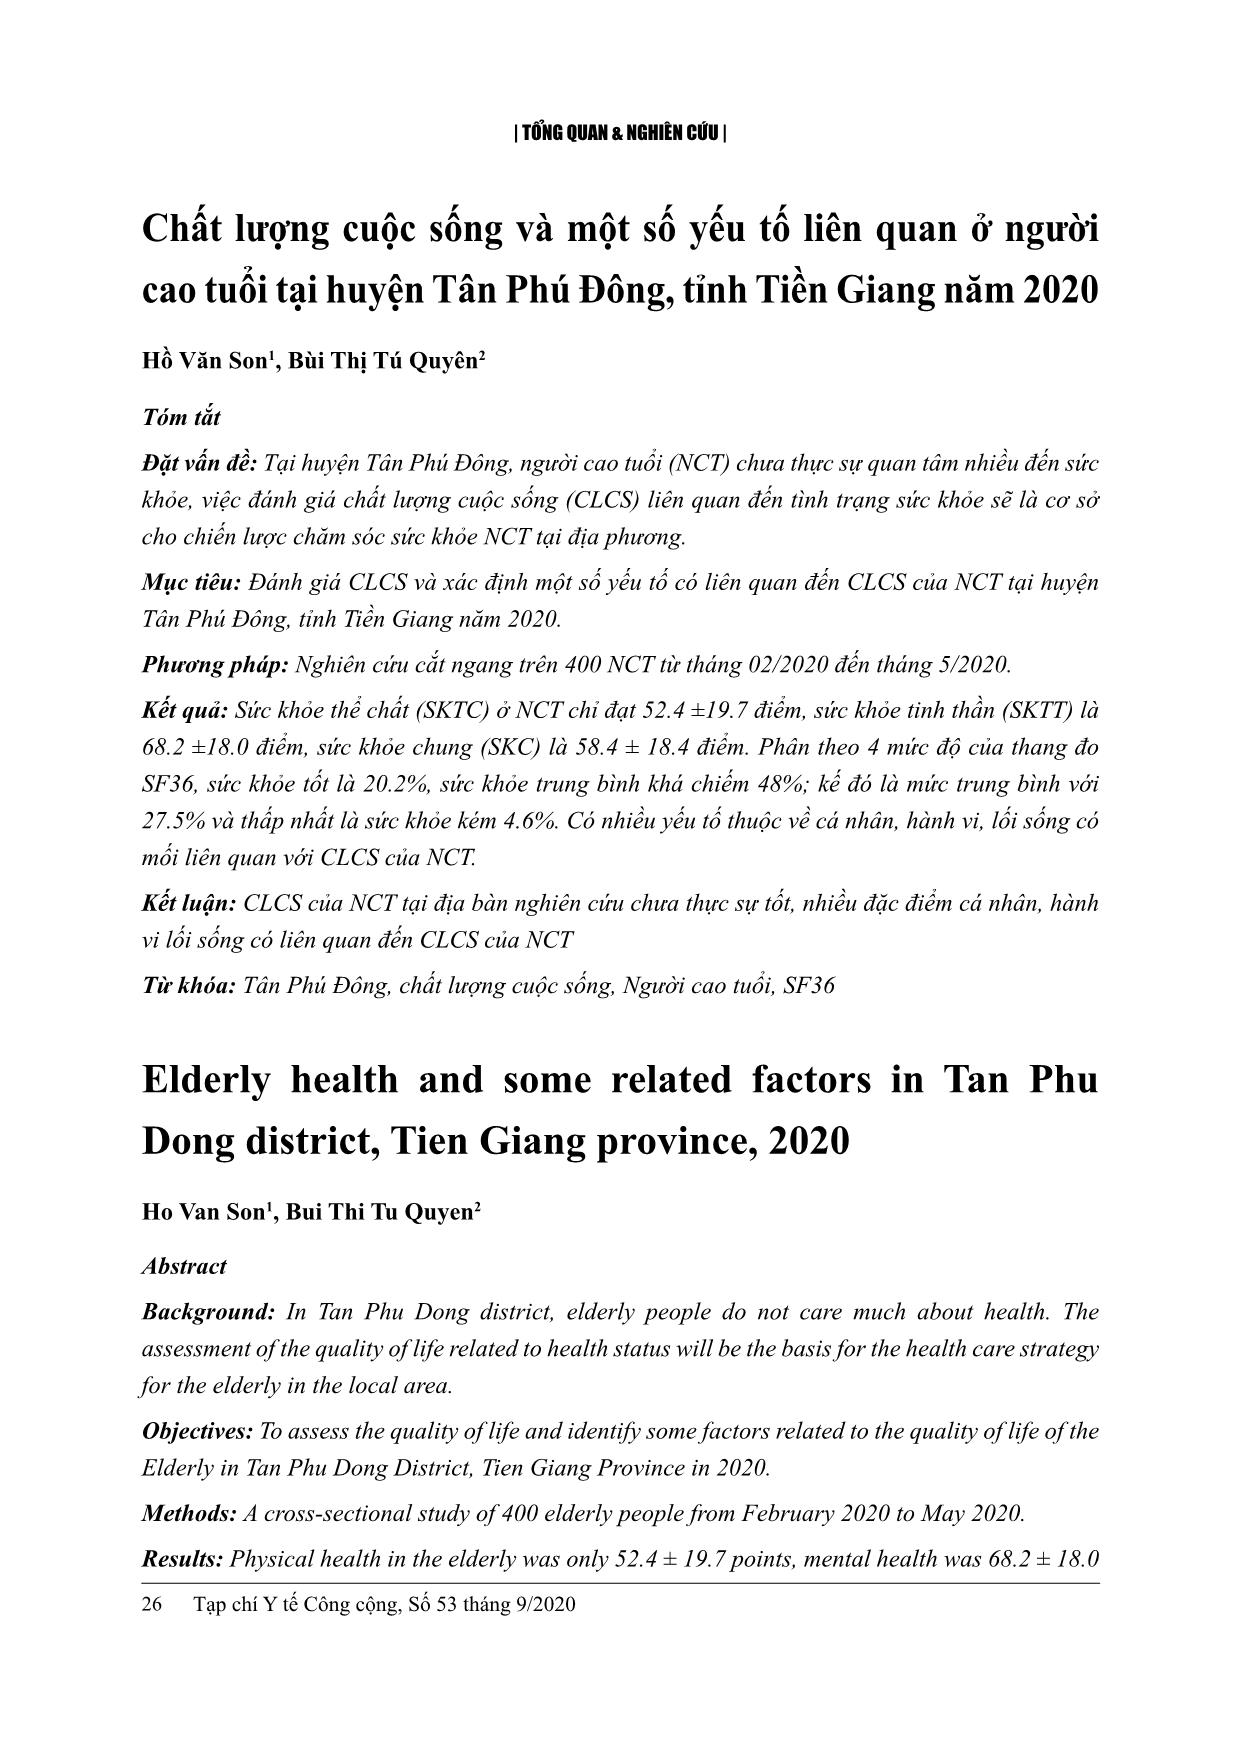 Chất lượng cuộc sống và một số yếu tố liên quan ở người cao tuổi tại huyện Tân Phú Đông, tỉnh Tiền Giang năm 2020 trang 1